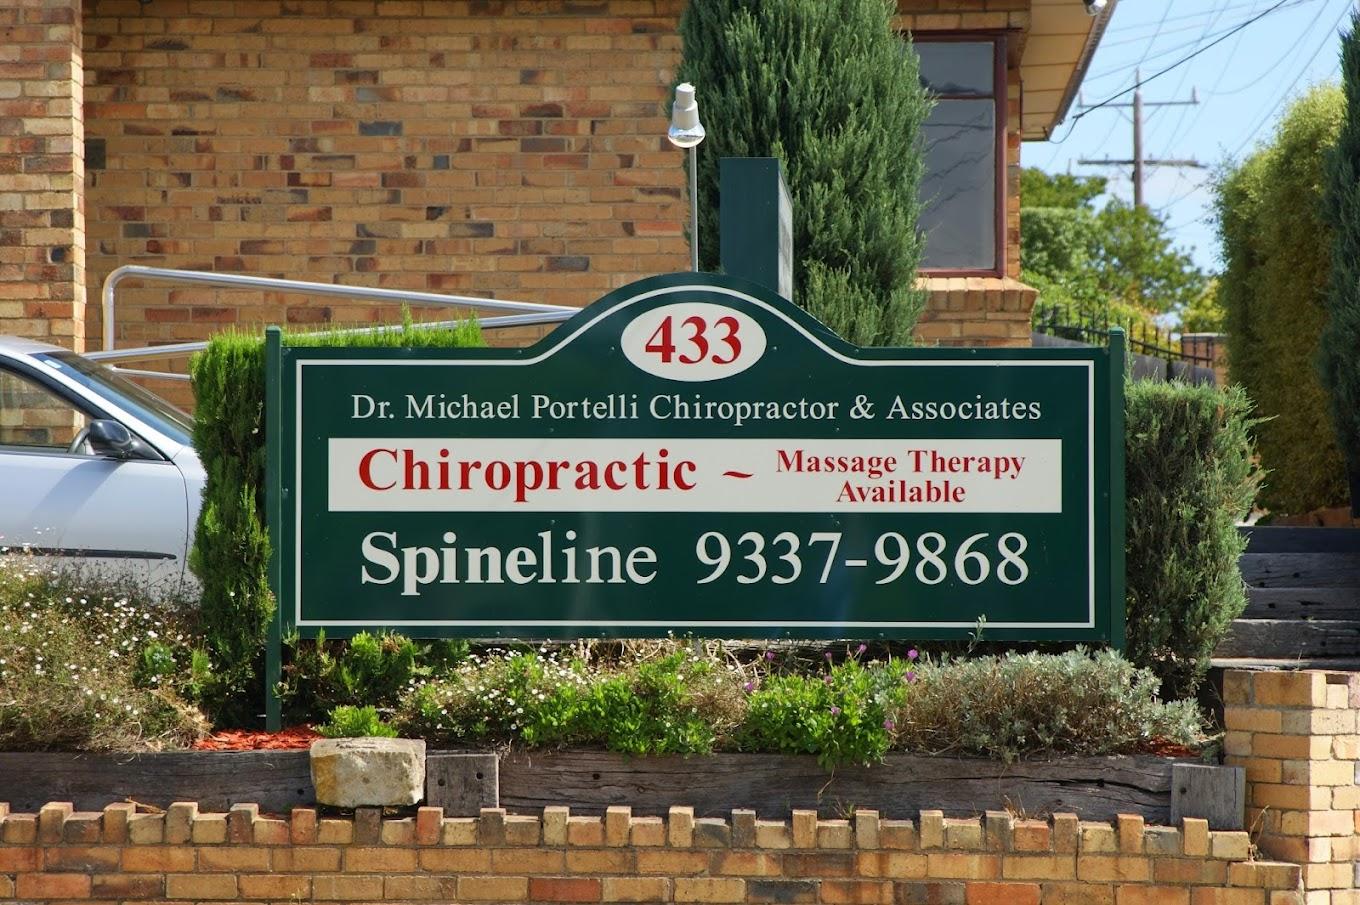 Spineline Chiropractic Essendon Aberfeldie (03) 9337 9868